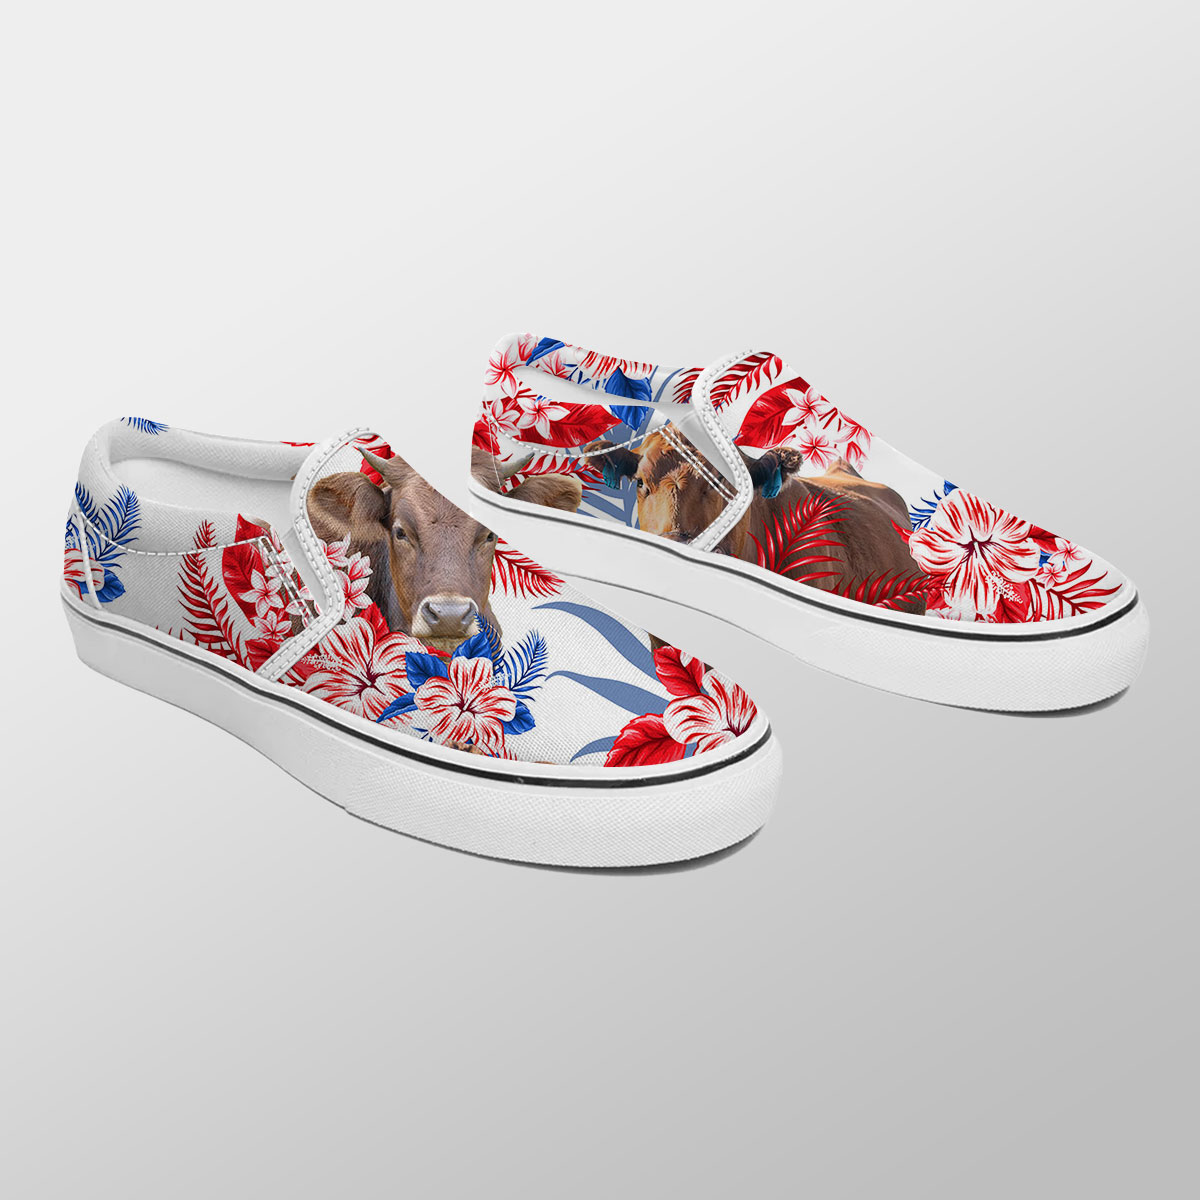 Gelbvieh Red Hibiscus Flower Slip On Sneakers